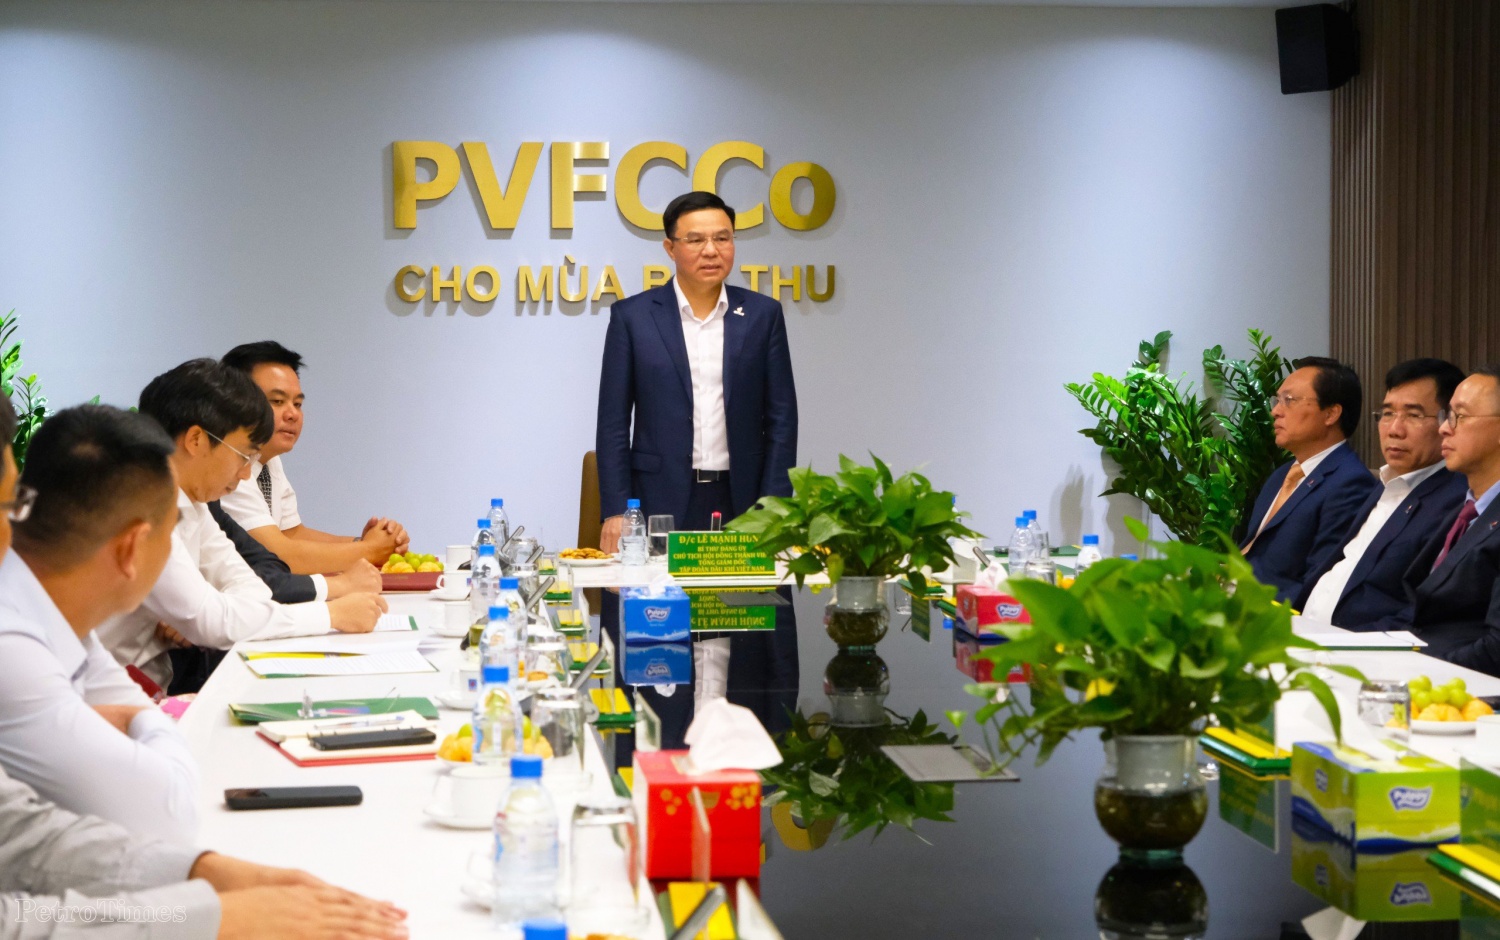 Công bố và trao các quyết định về công tác cán bộ của PVFCCo